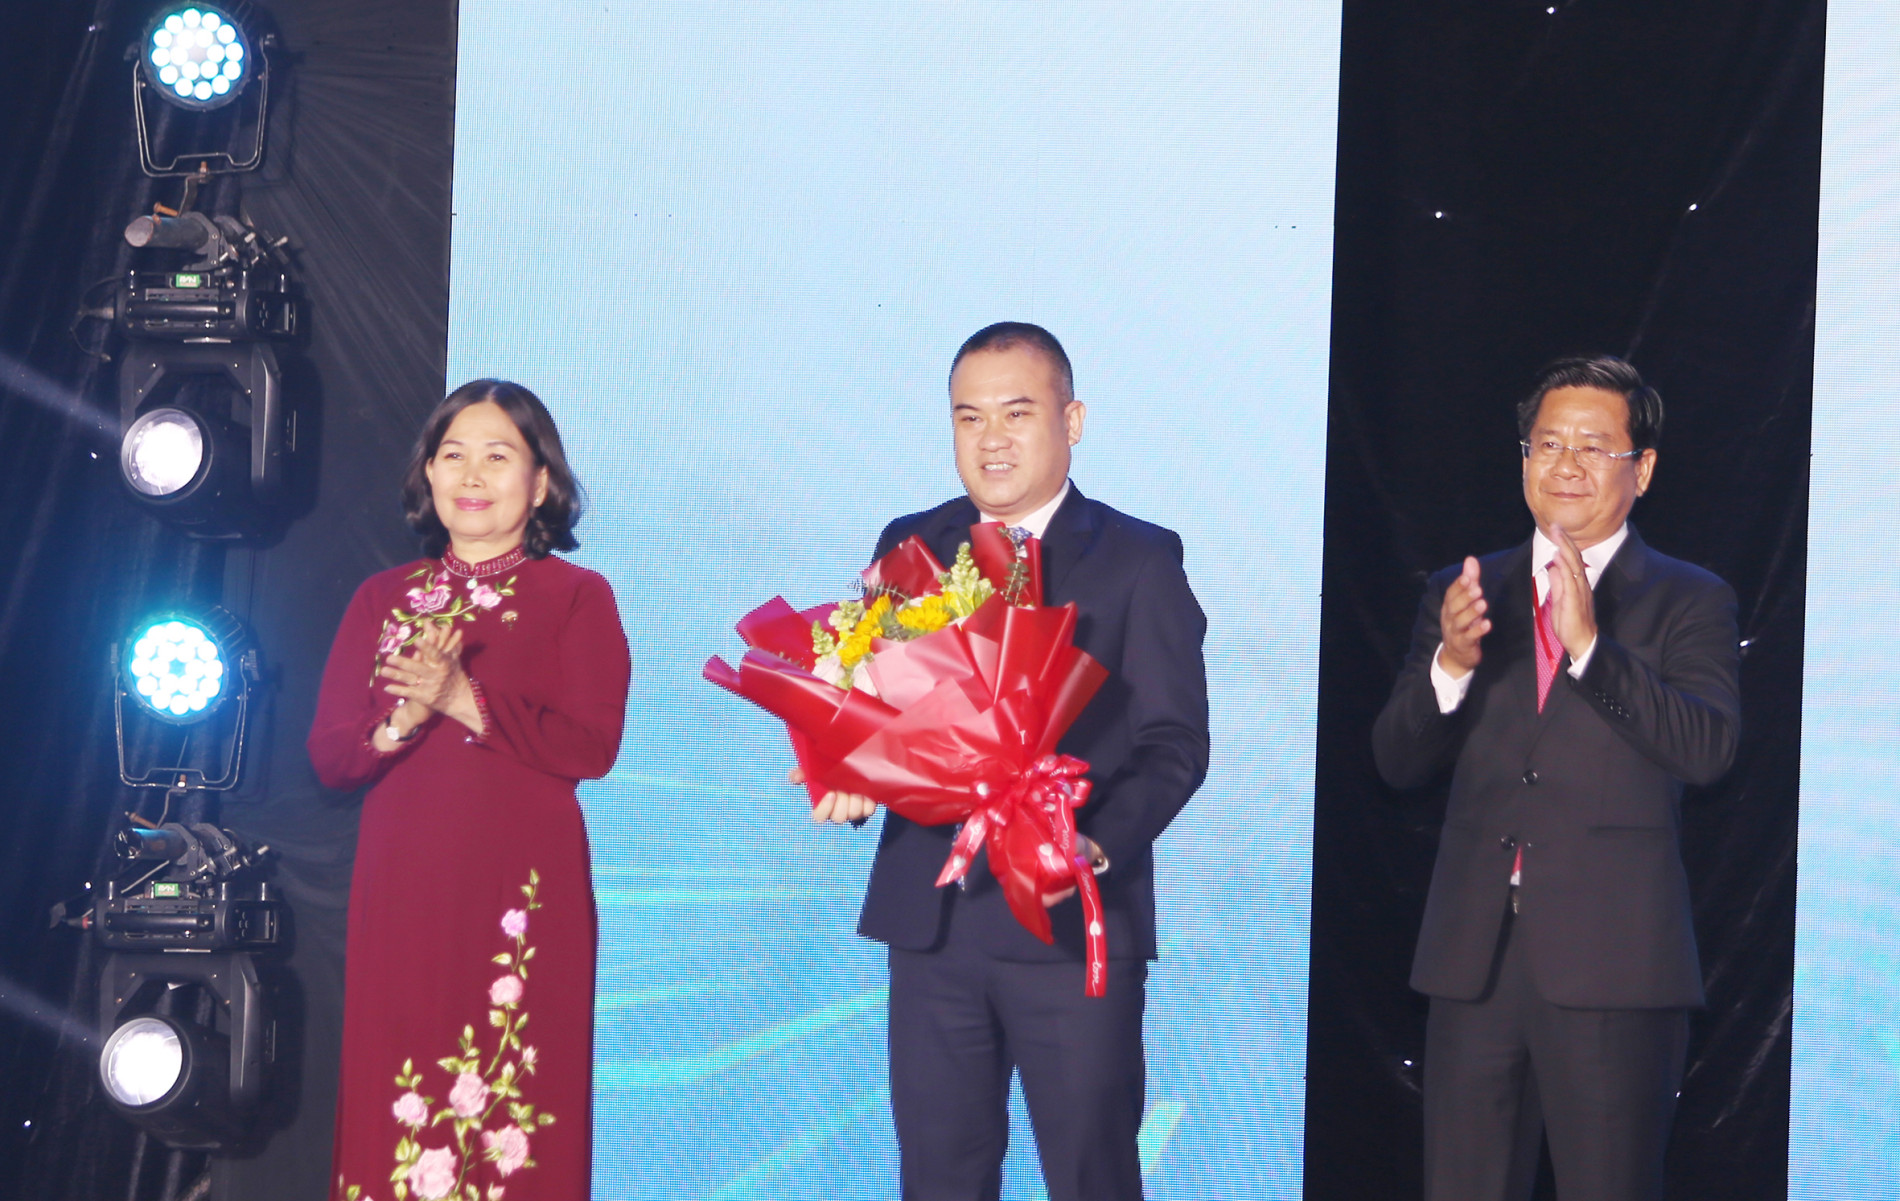 Lãnh đạo tỉnh trao nhận Giấy chứng nhận đăng ký đầu tư dự án cơ sở lưu trú công nhân tại Khu công nghiệp chuyên sâu Phú Mỹ 3 cho đại diện Công ty CP Thanh Bình Phú Mỹ.